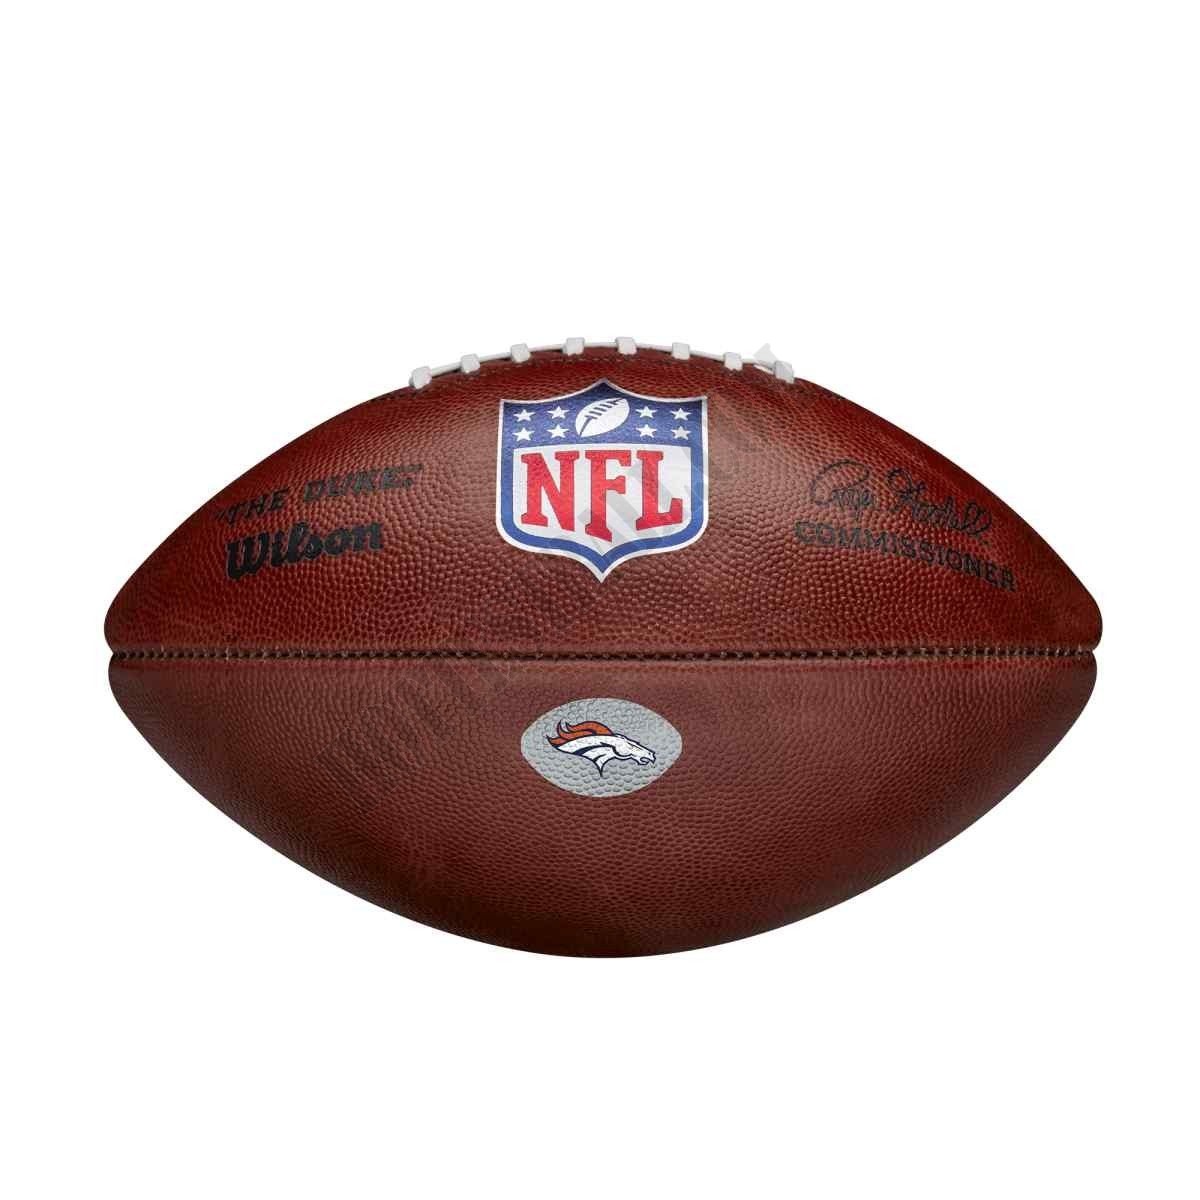 The Duke Decal NFL Football - Denver Broncos ● Wilson Promotions - The Duke Decal NFL Football - Denver Broncos ● Wilson Promotions